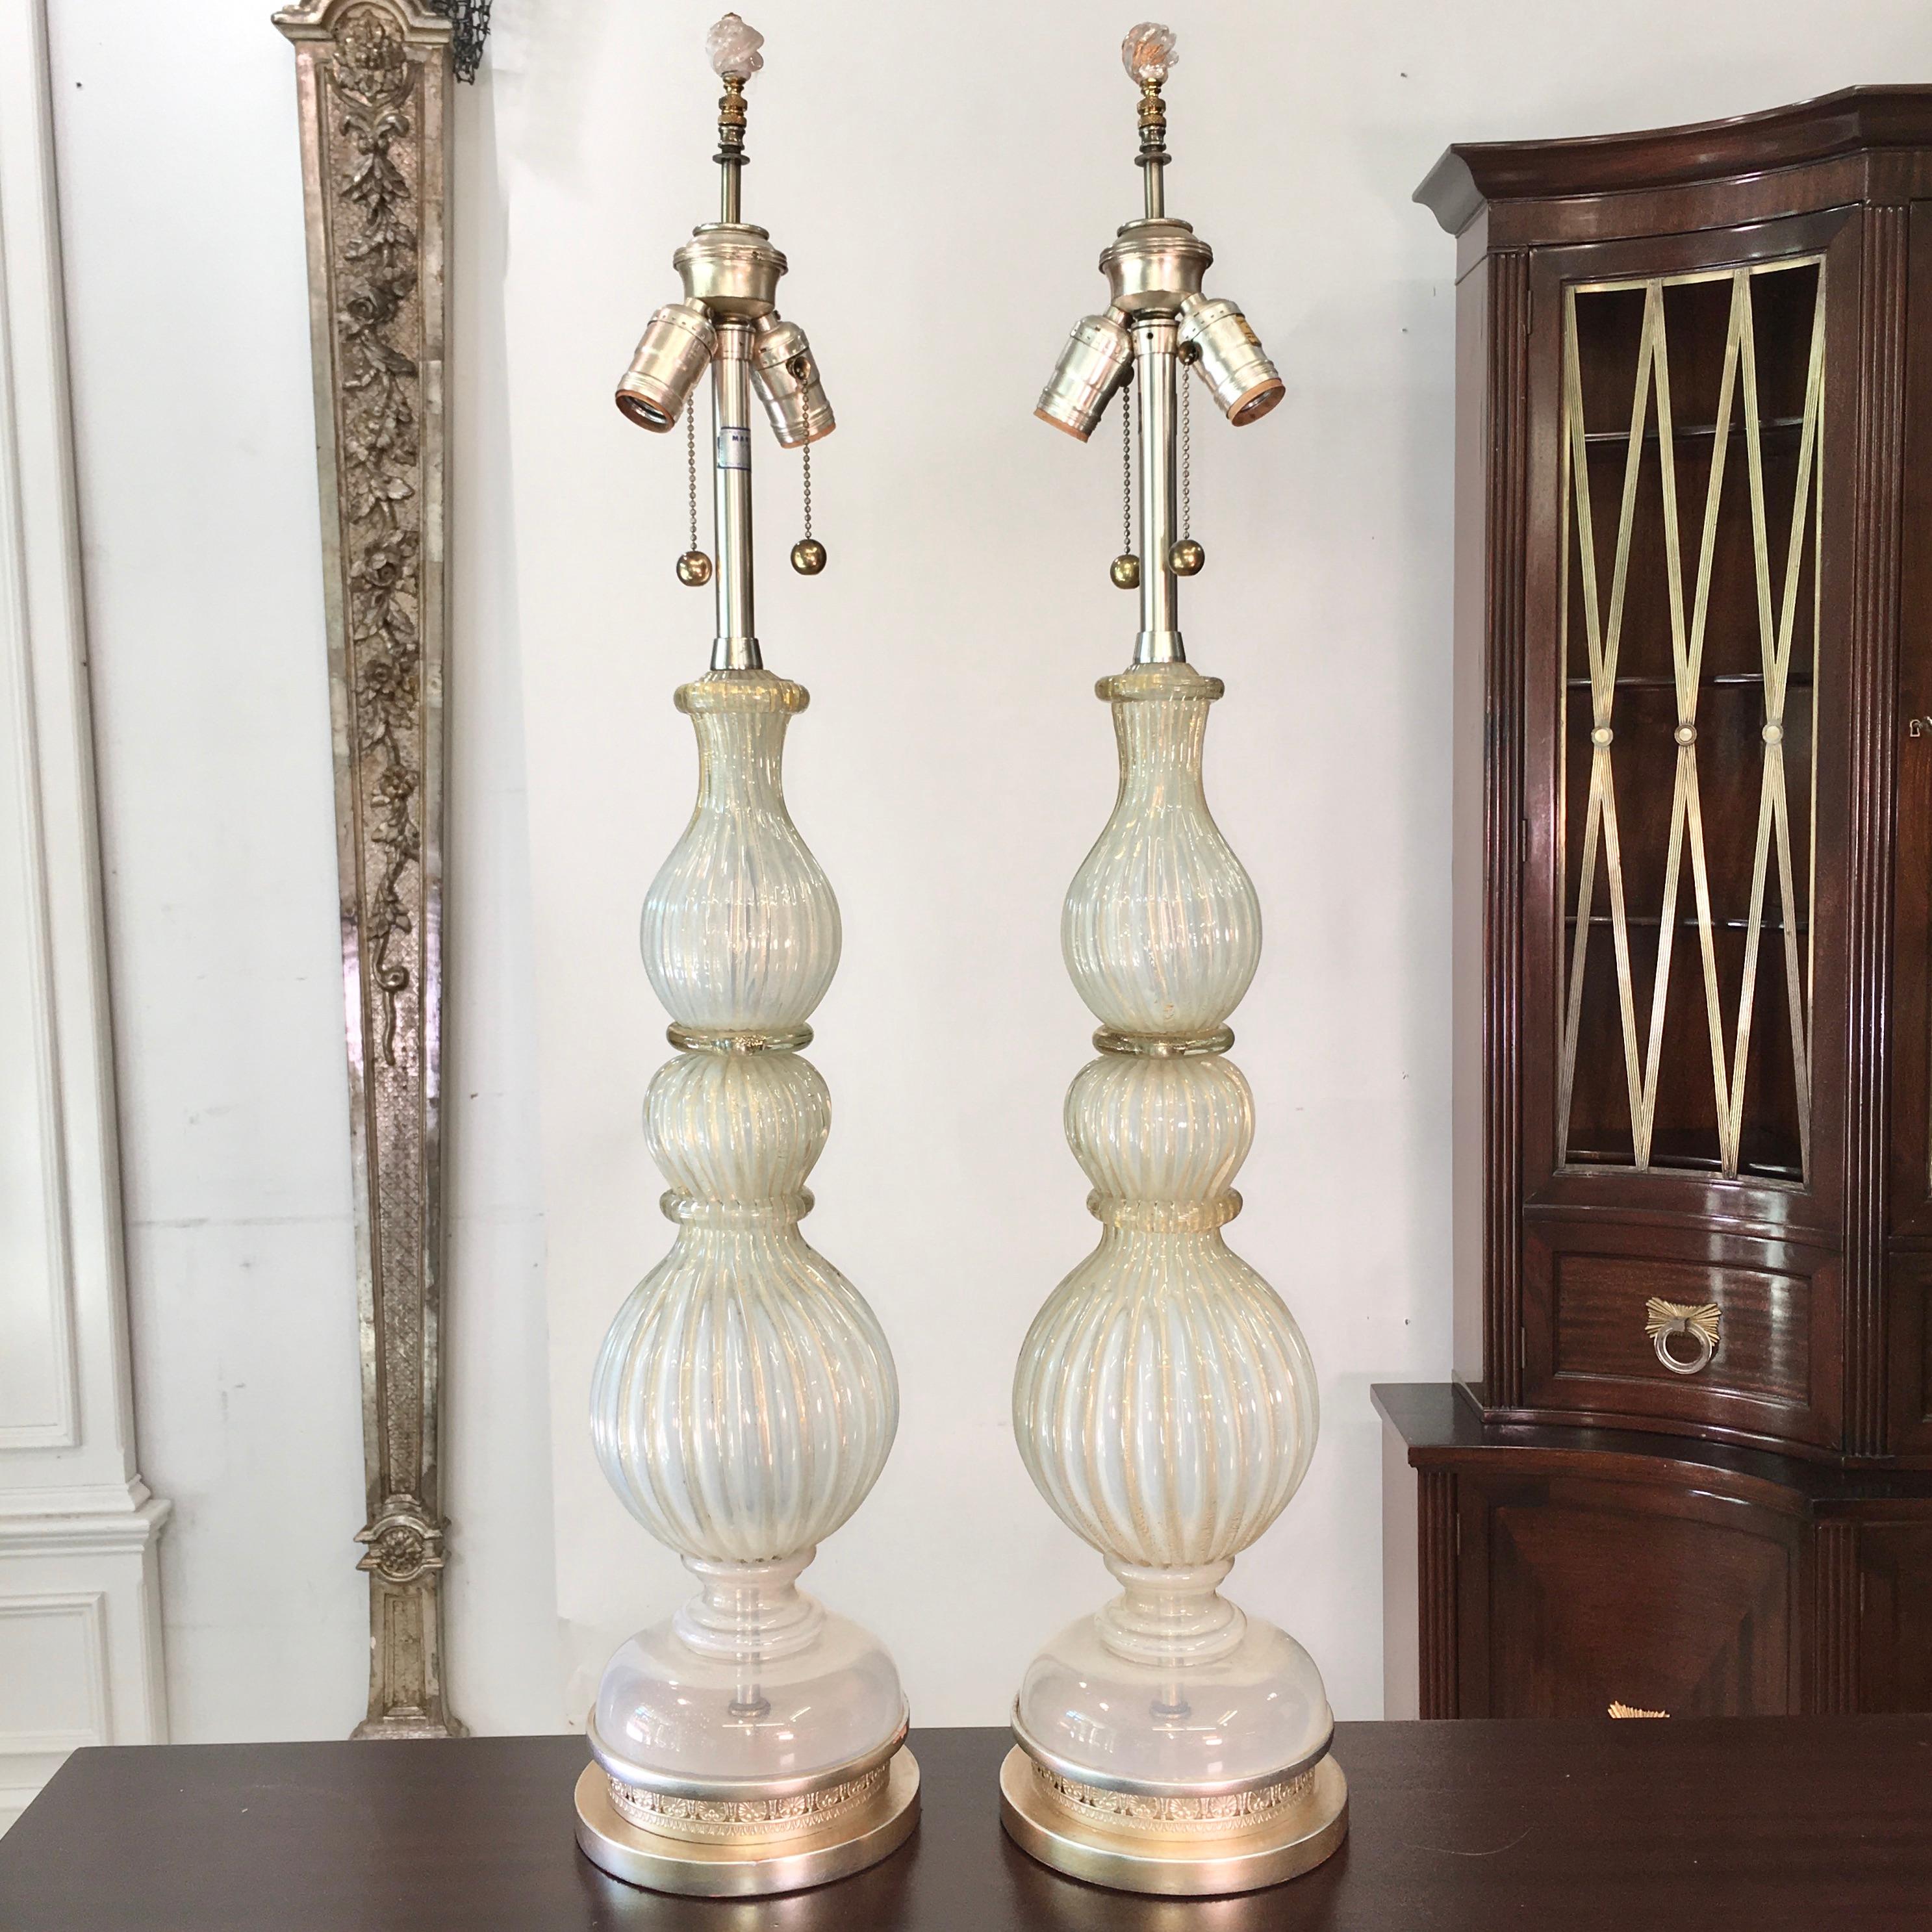 Ein Paar originaler Tischlampen aus Murano-Glas von Archimede Seguso, importiert von The Marbro Lamp Co. um 1960. Beide Lampen sind signiert.
Geripptes, opalisierendes, silberweißes Glas mit goldenen Flecken. Die Basen wurden mit Blattgold